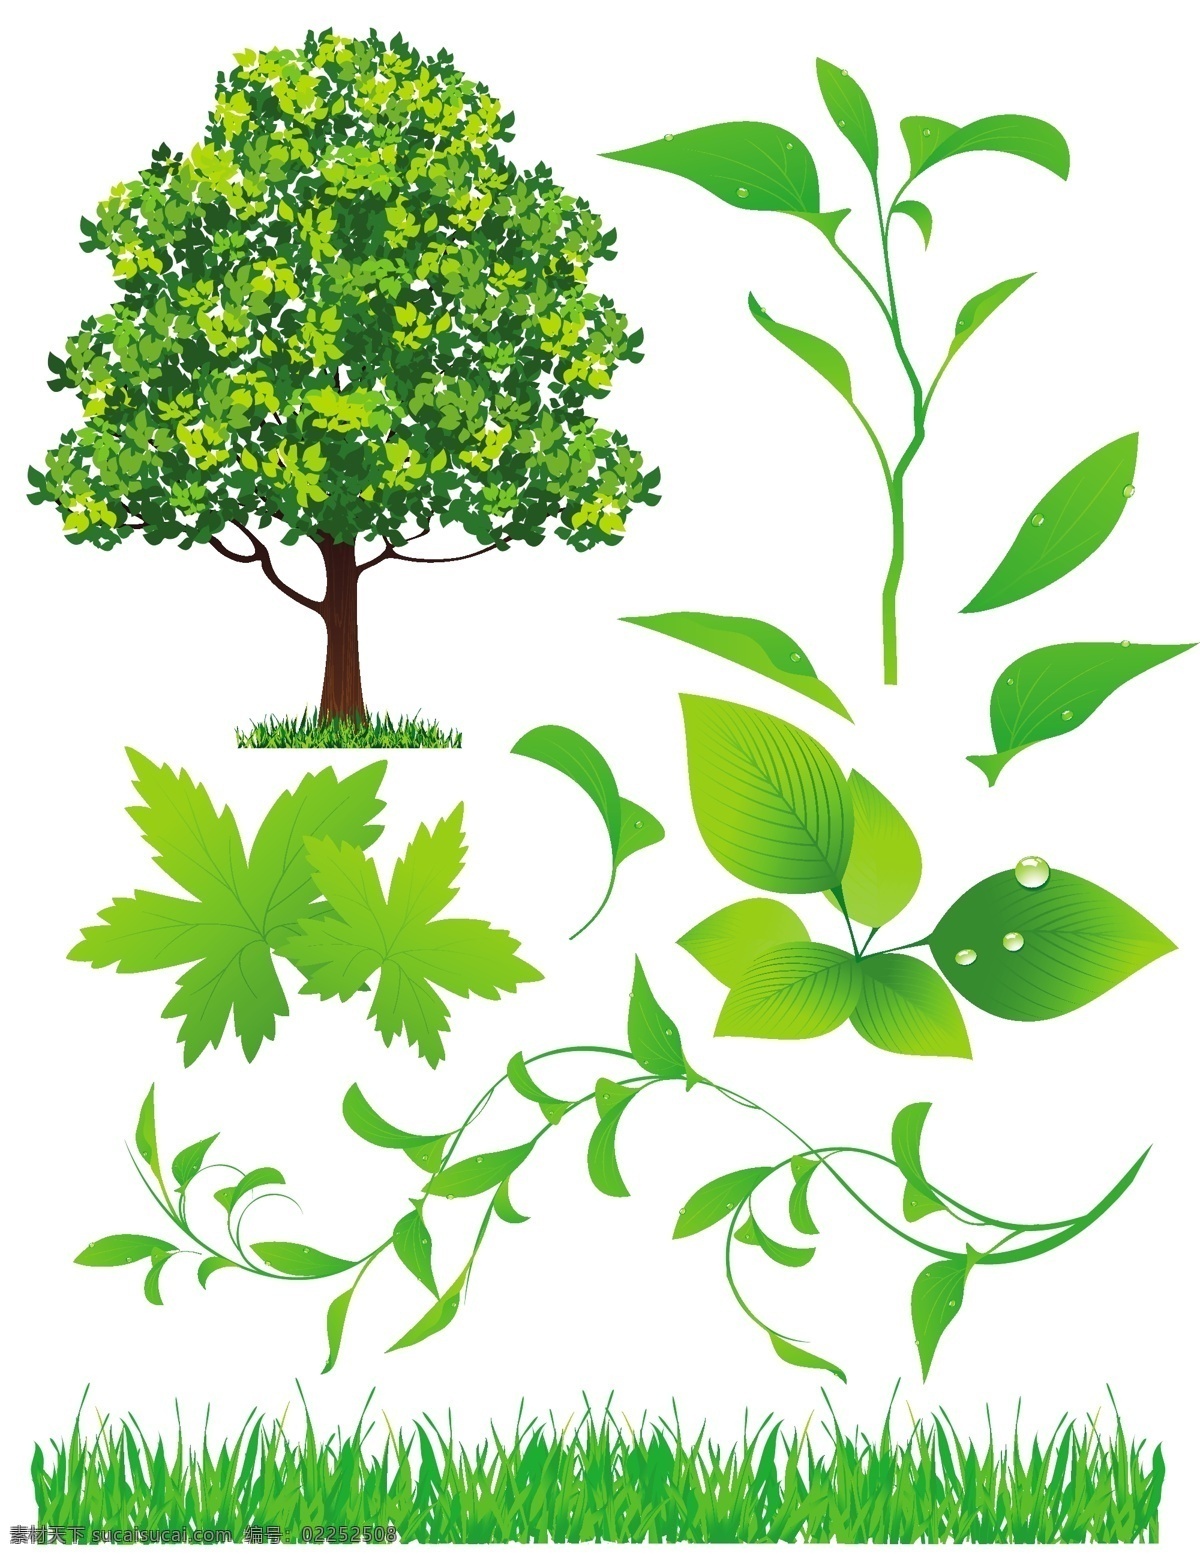 绿色植物 系列 矢量 材料 盆景 盆栽植物 树木 叶子 竹 绿色的叶子 载体 矢量图 日常生活